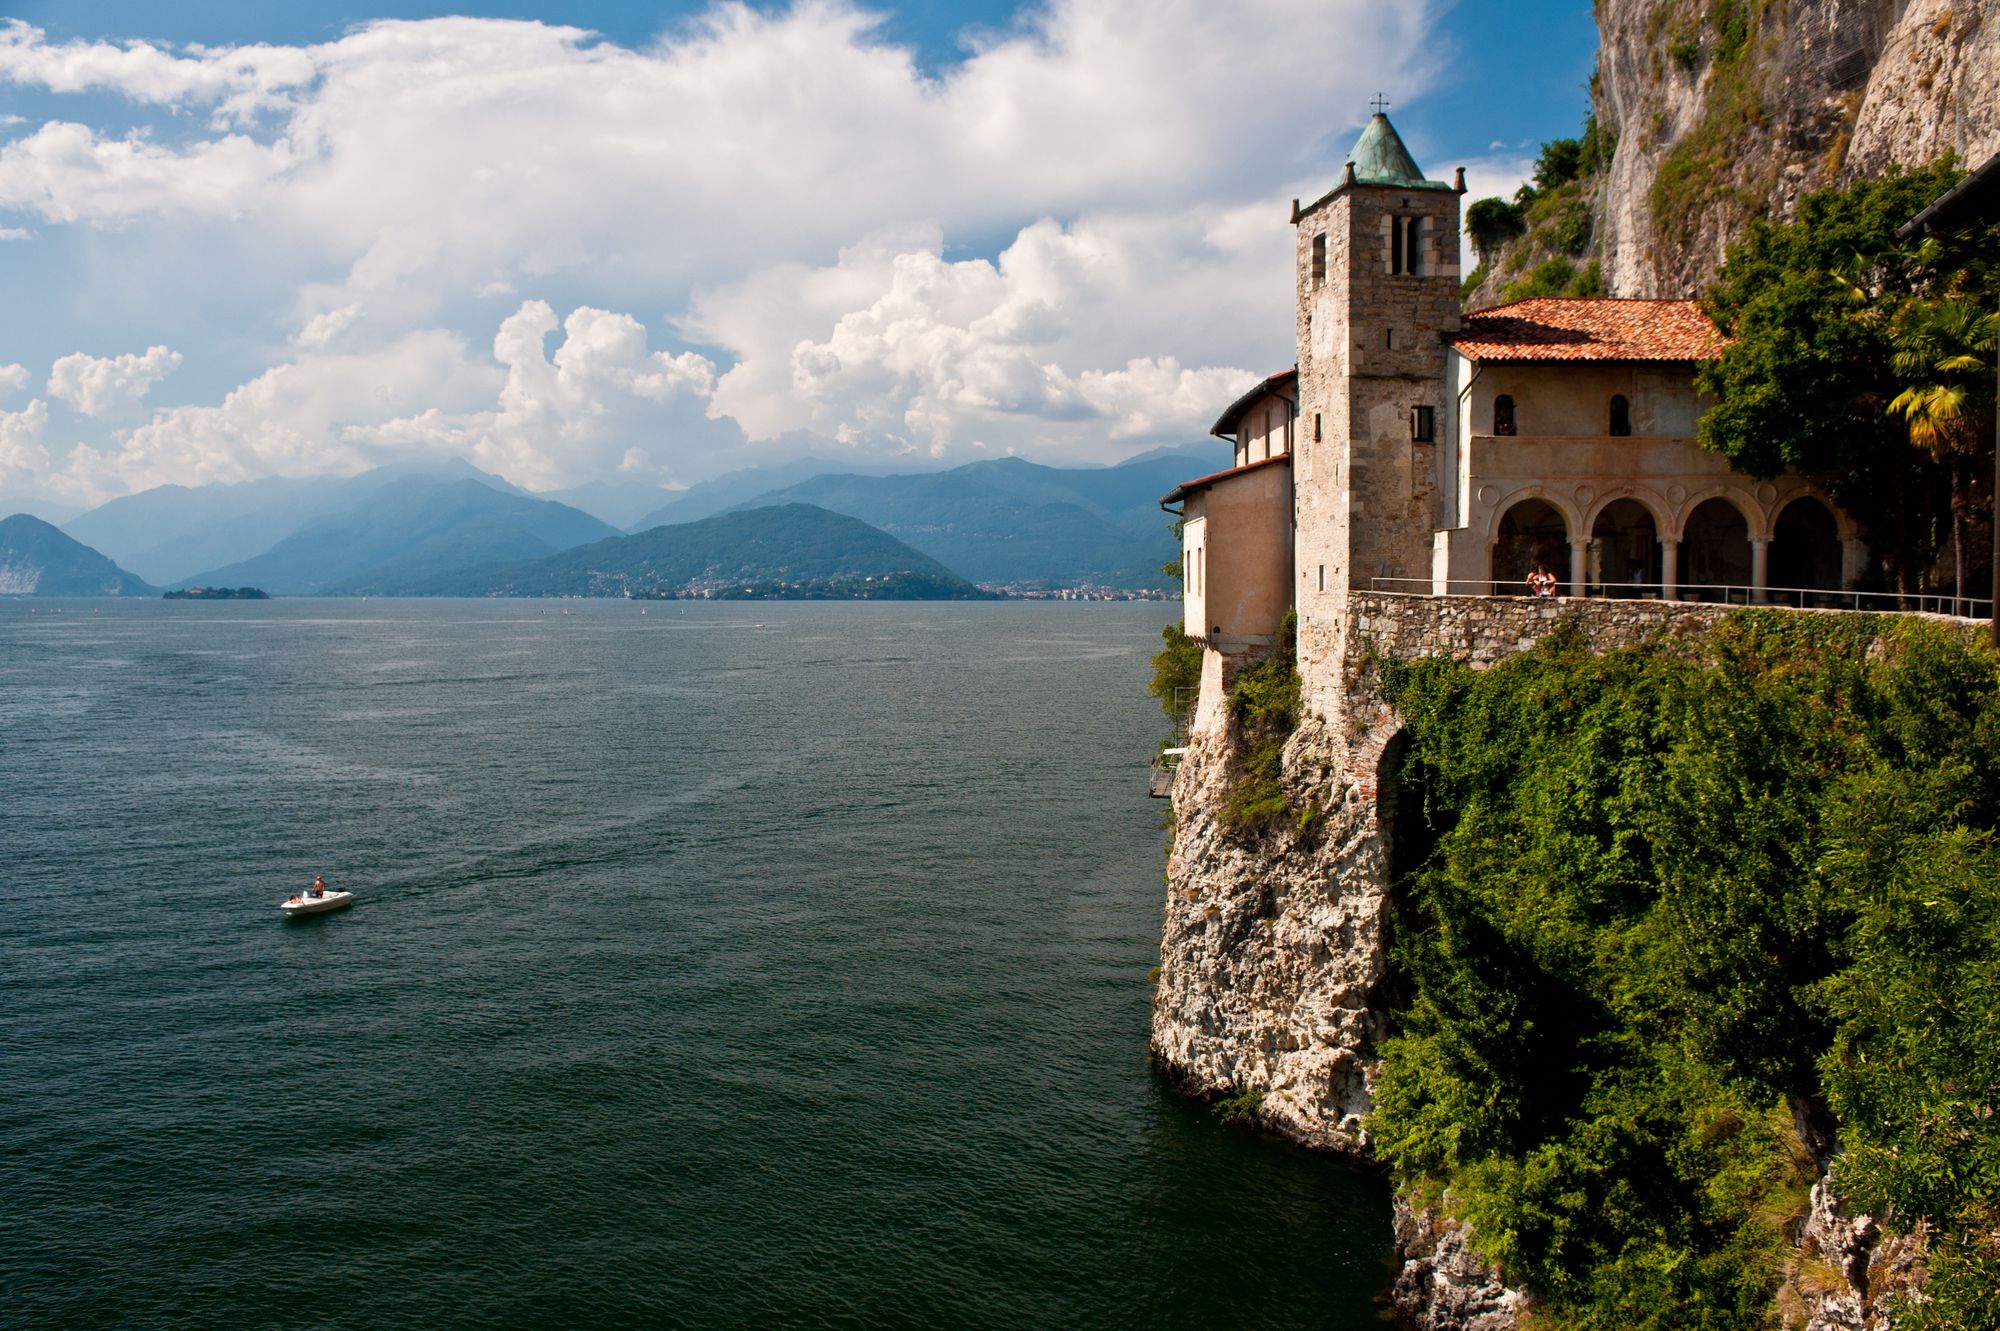 Santa Caterina del Sasso, Lake Maggiore